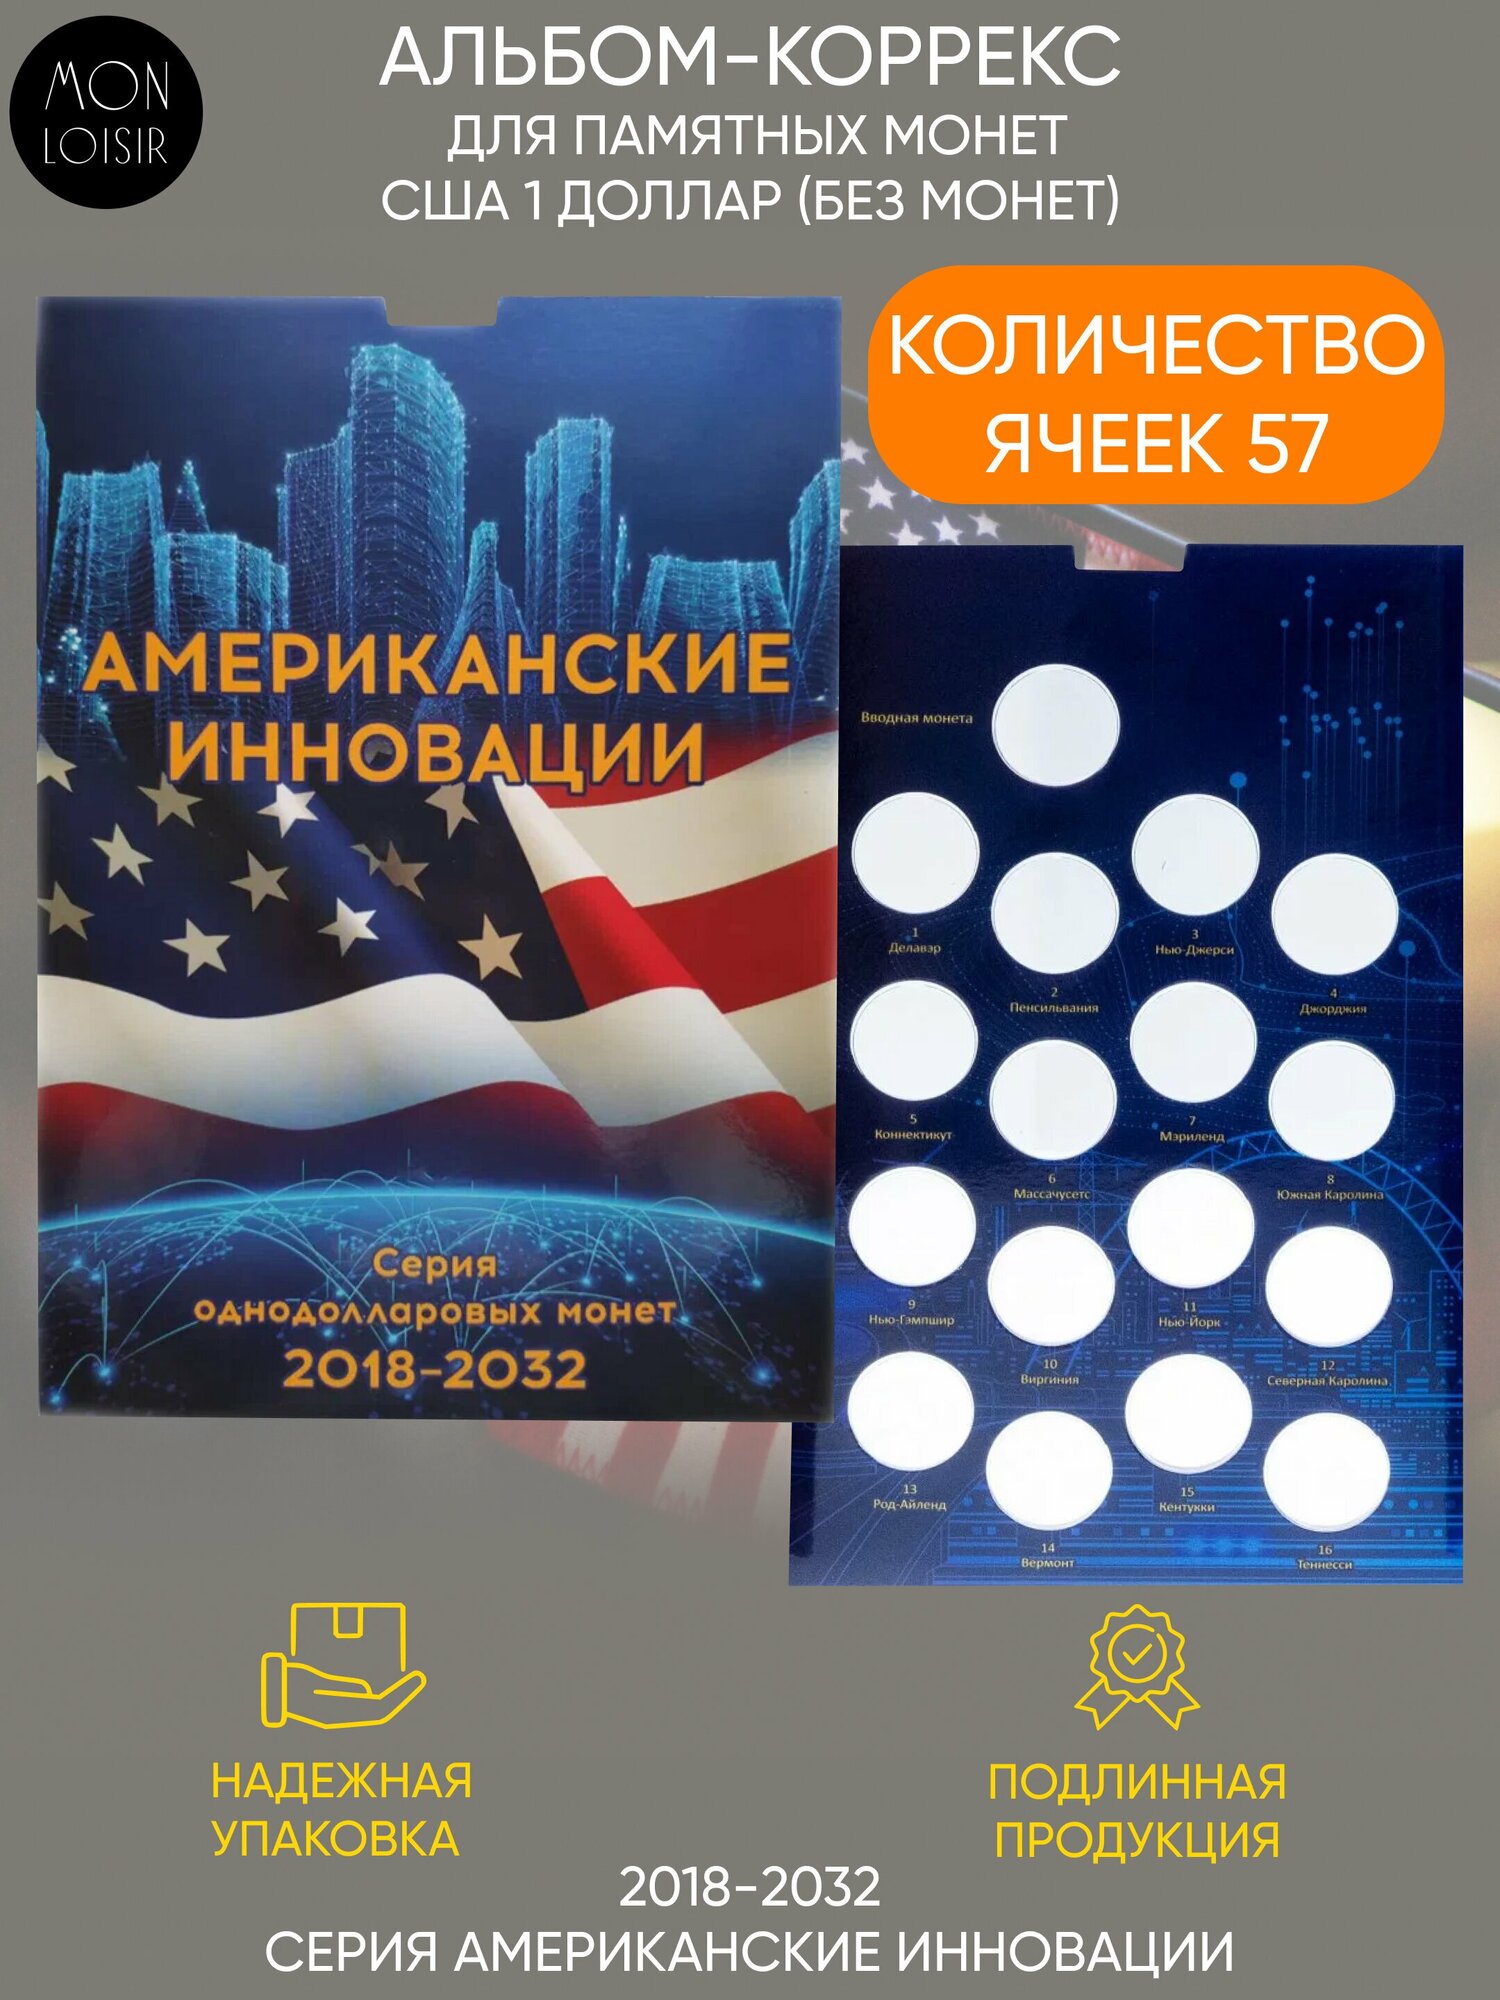 Альбом-коррекс для памятных монет номиналом 1 доллар "Американские инновации". США, 2018-2032 гг.